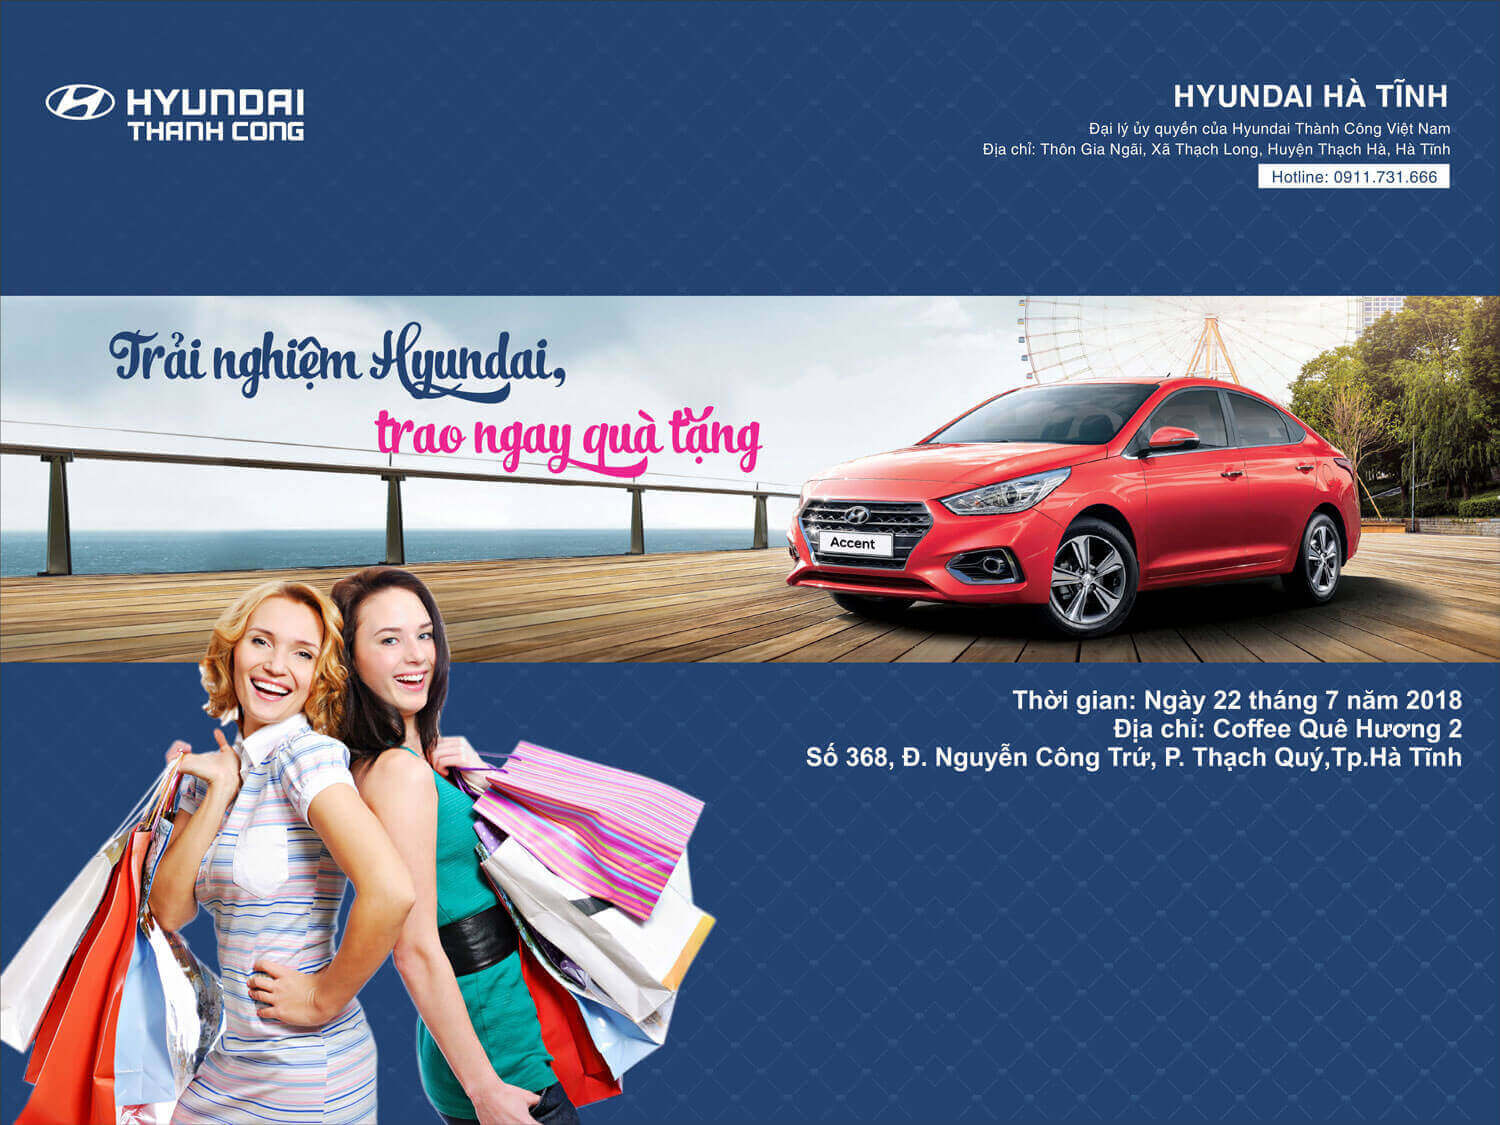 Trải nghiệm Hyundai, Trao ngay quà tặng